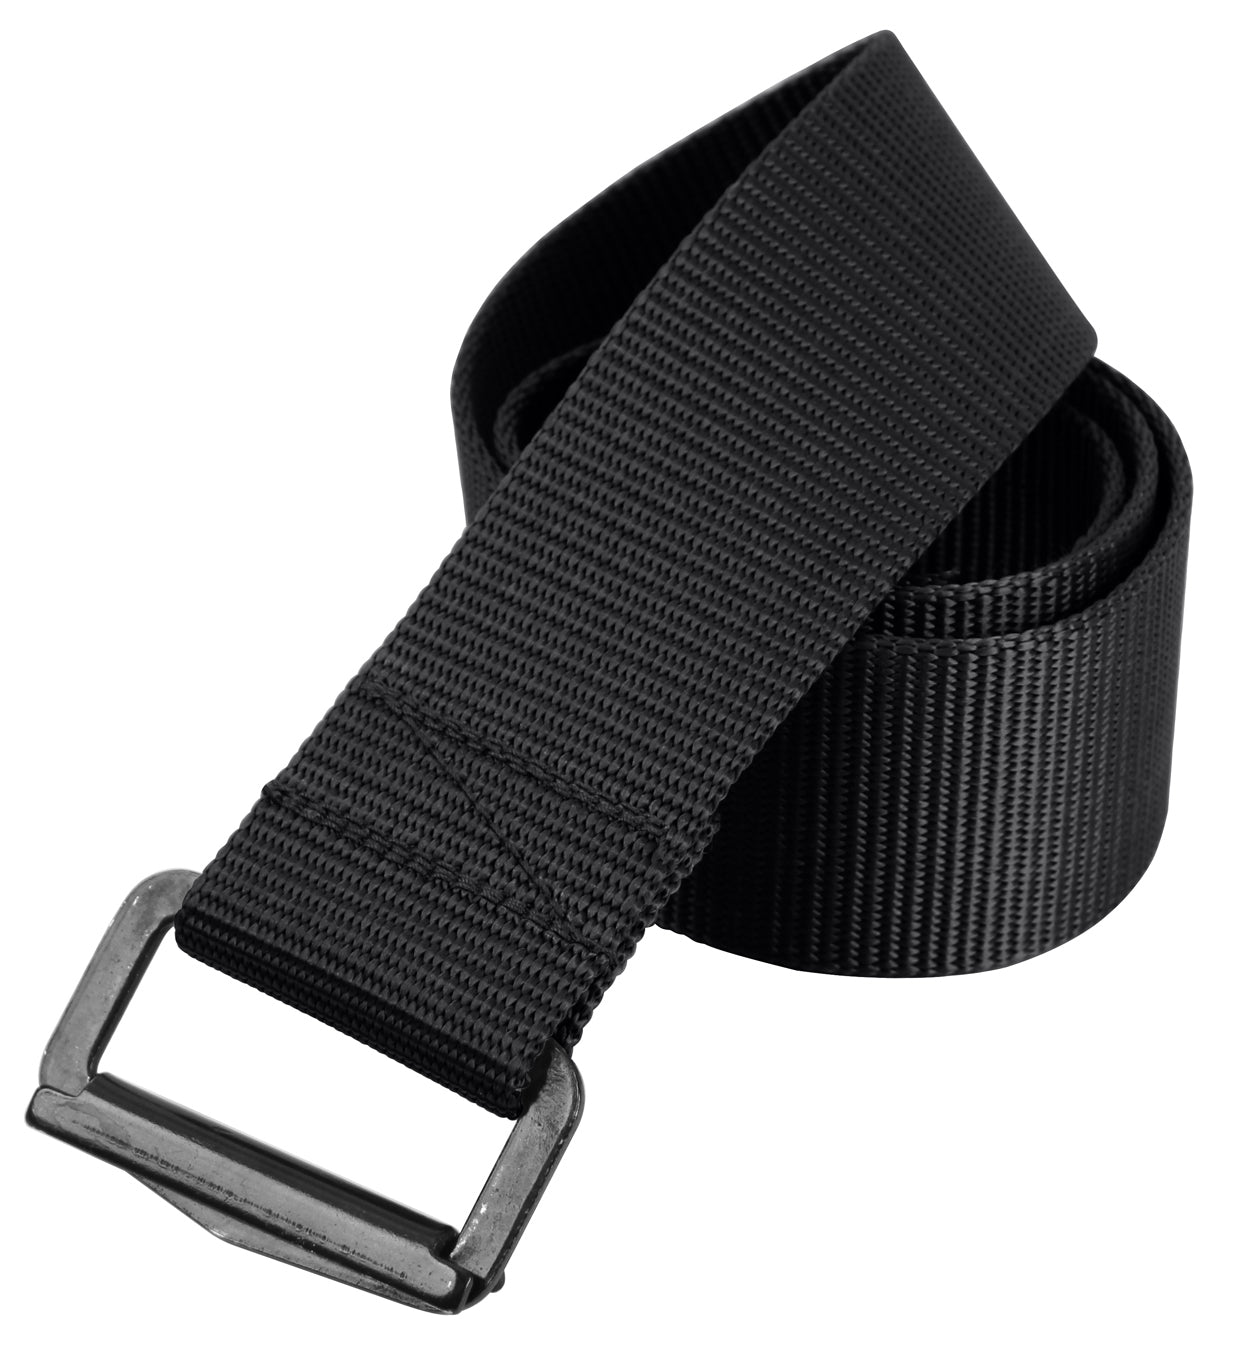 Rothco Heavy Duty Riggers Uniform Belt